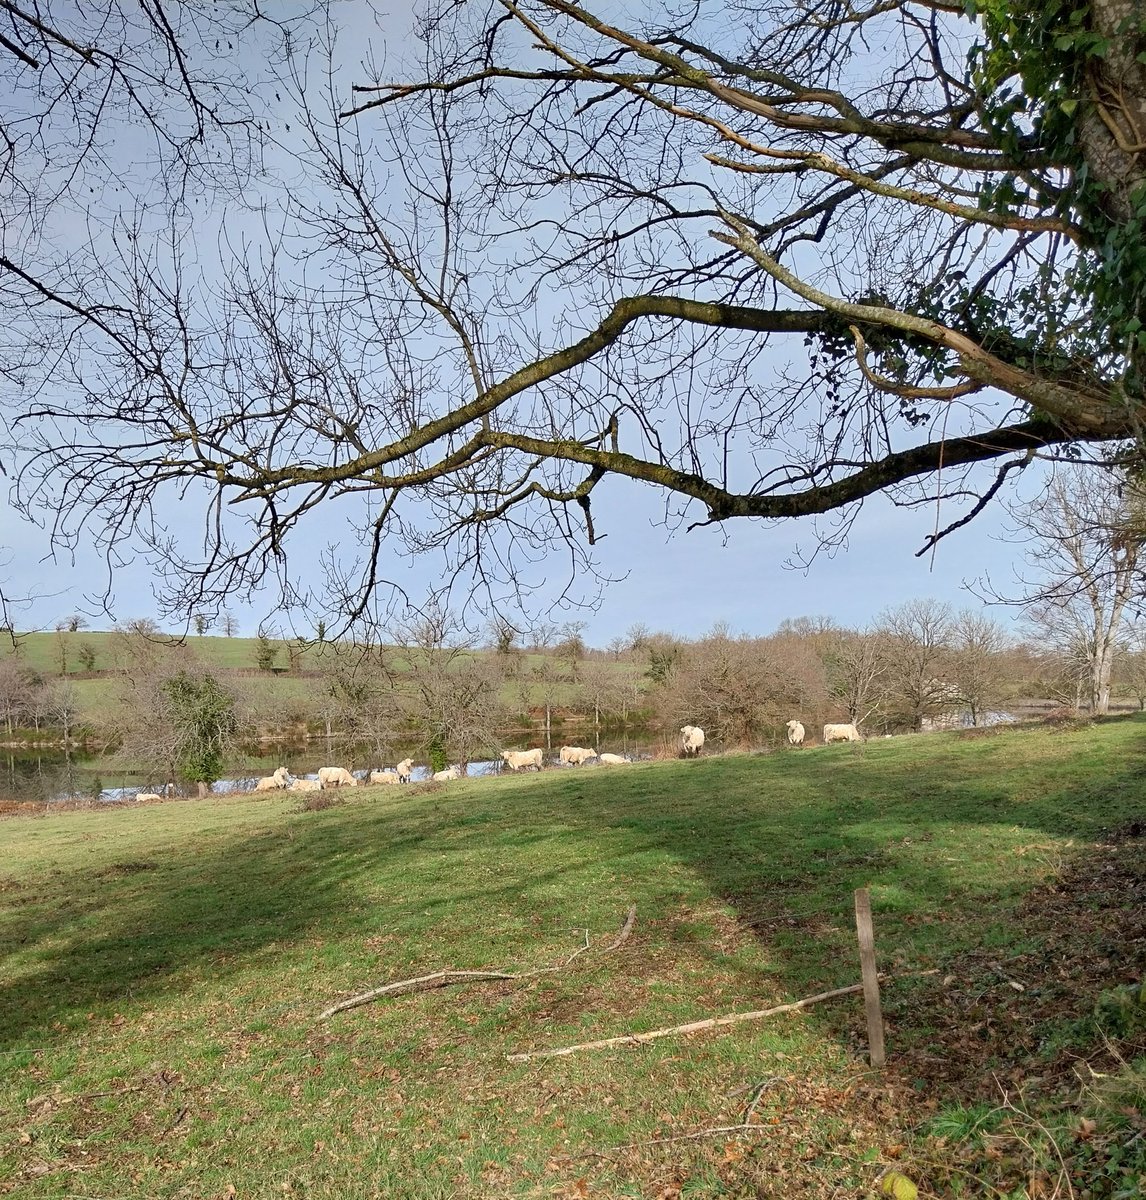 Des charolaises sereines qui profitent de la douceur de janvier ! 
#jour28 
#élevage #jaimelespaysans #nature #BaladeSympa 
#FrAgTw